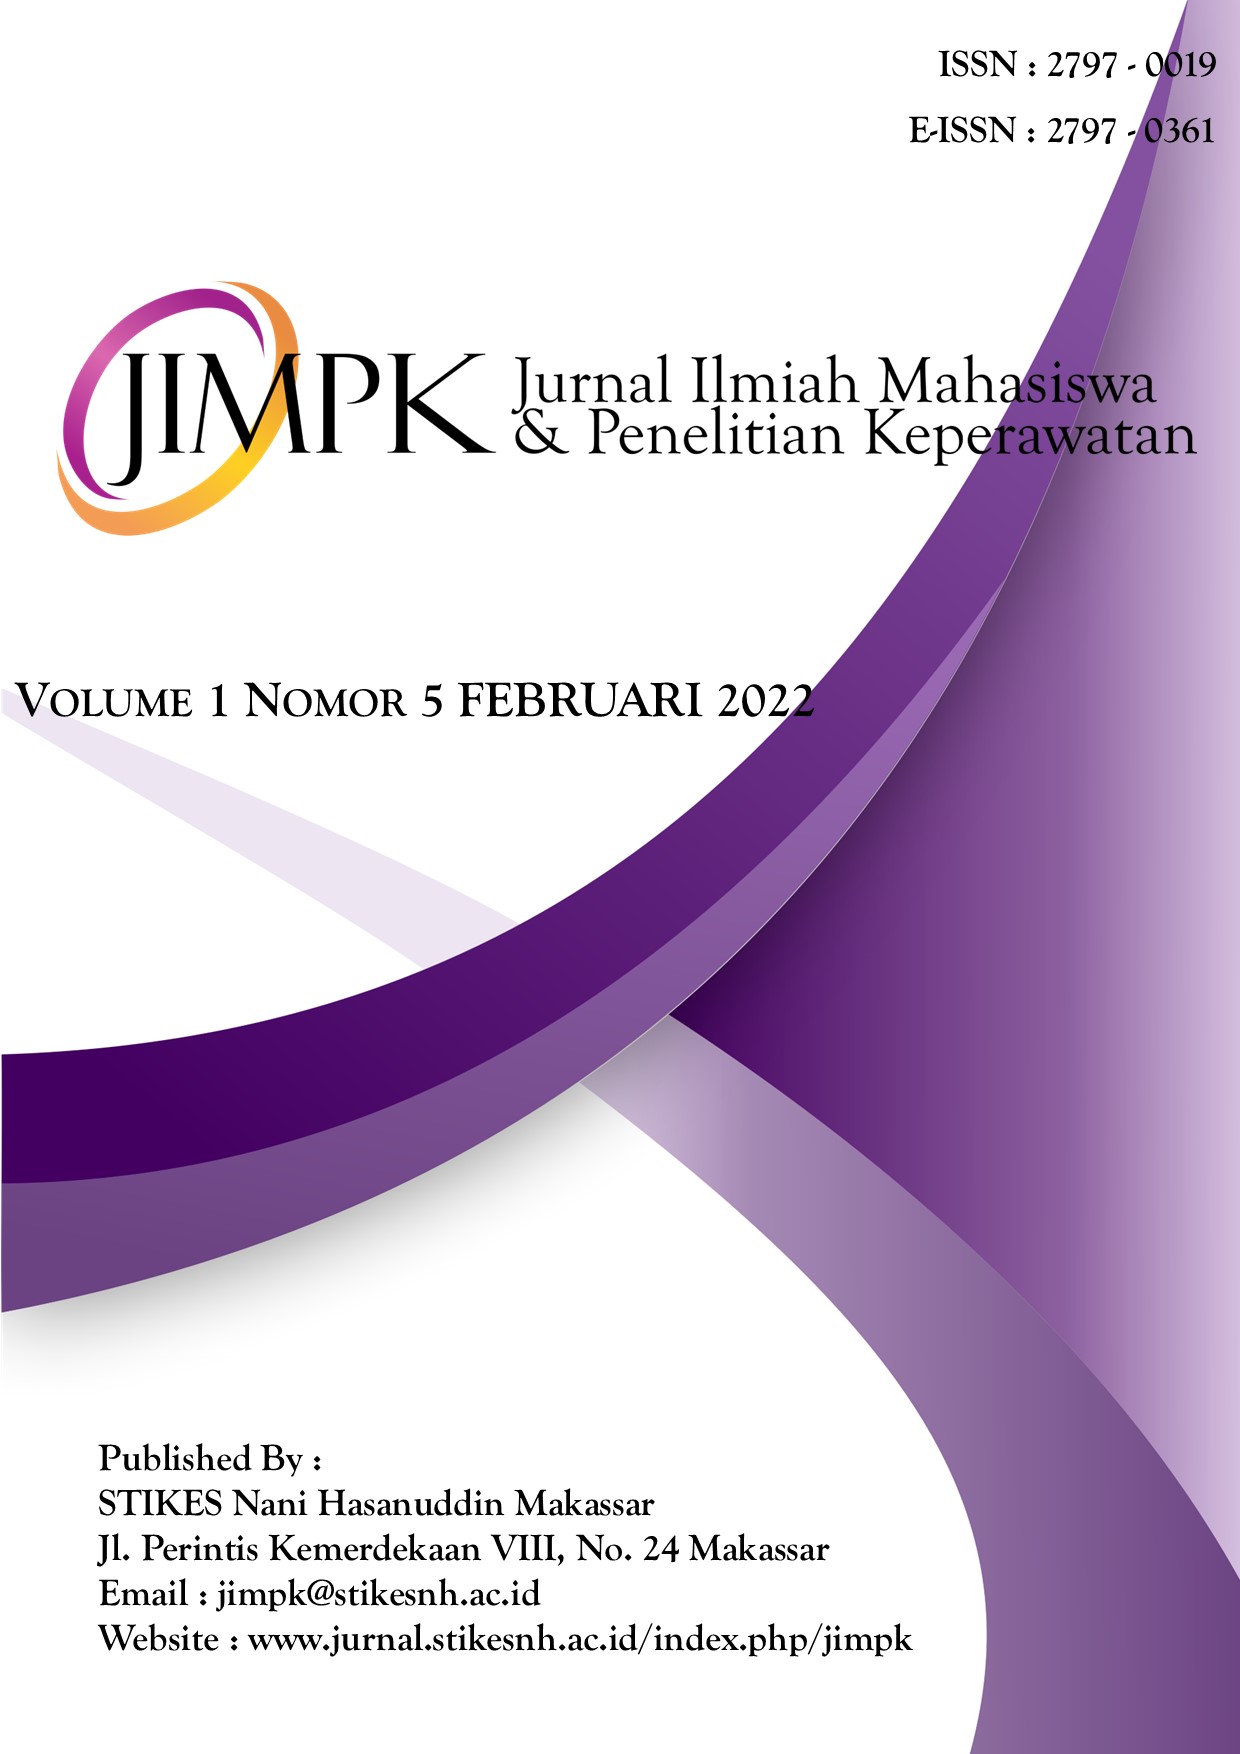 					View Vol. 1 No. 5 (2022): Jurnal Ilmiah Mahasiswa & Penelitian Keperawatan
				